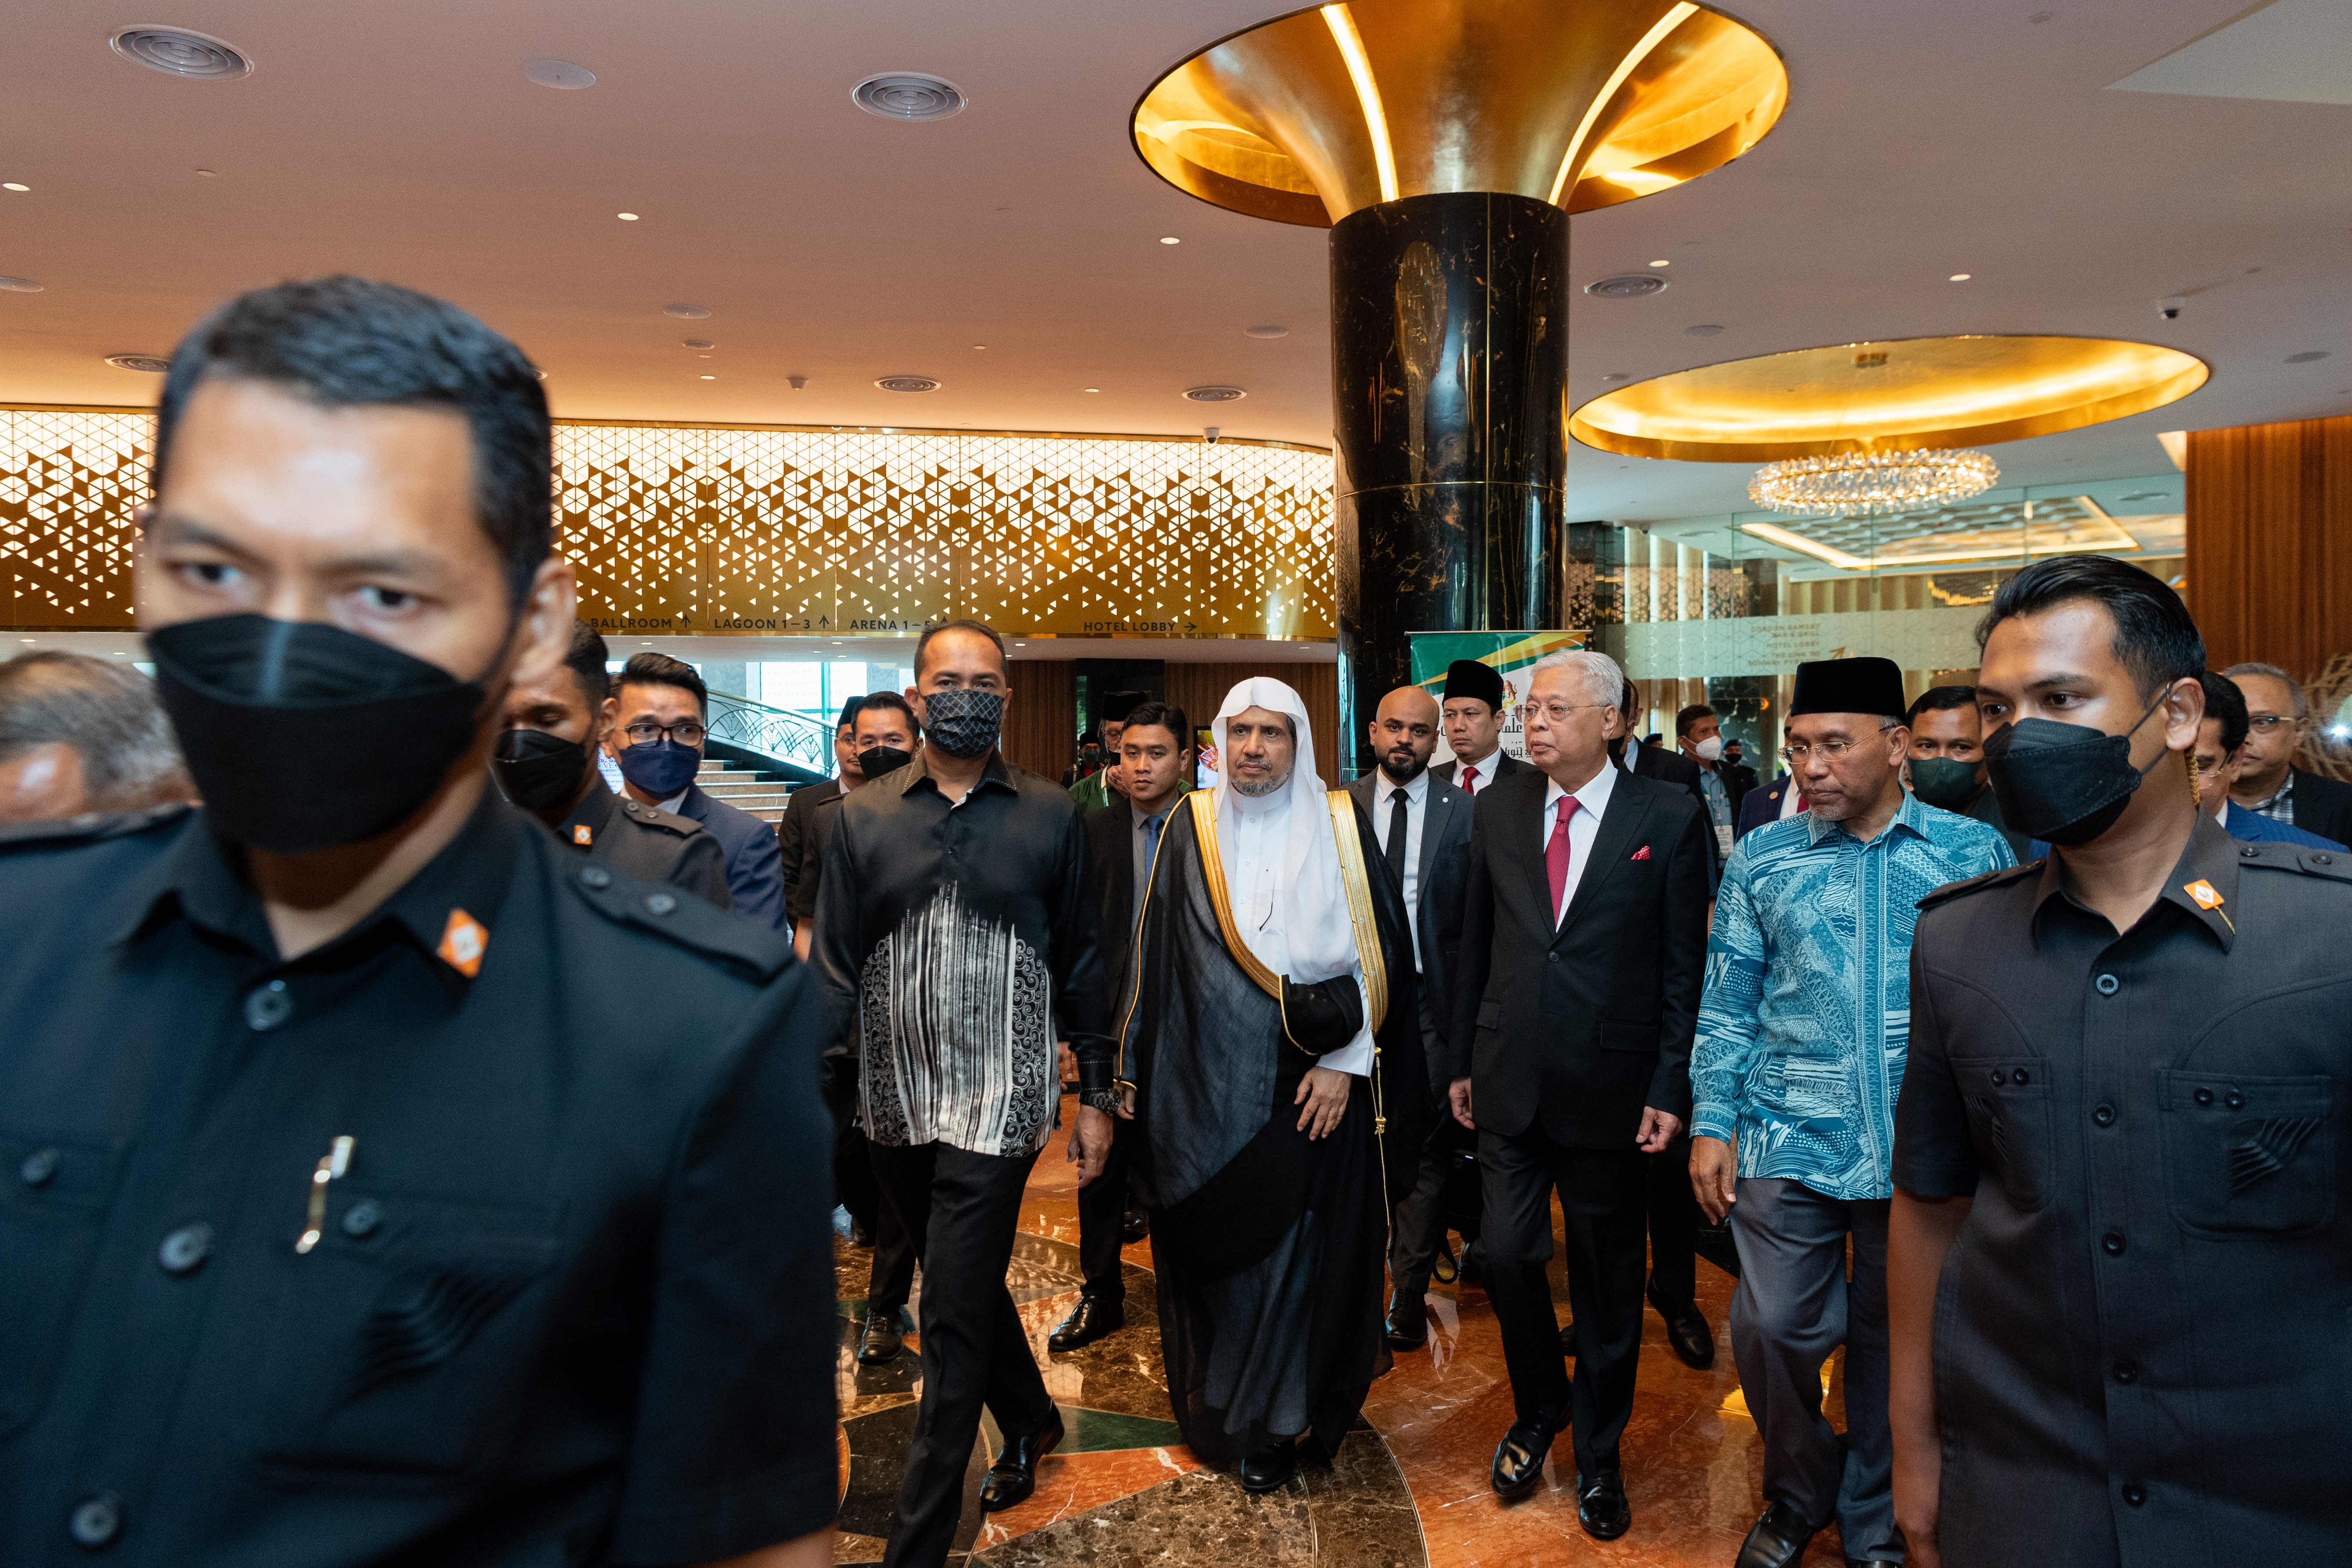 دولة رئيس وزراء ماليزيا، مفتتحاً “مؤتمر علماء جنوب شرق آسيا”: ‏نشعر بالفخر لاختيار رابطة العالم الإسلامي‬⁩ ماليزيا دولةً مضيفةً للمؤتمر